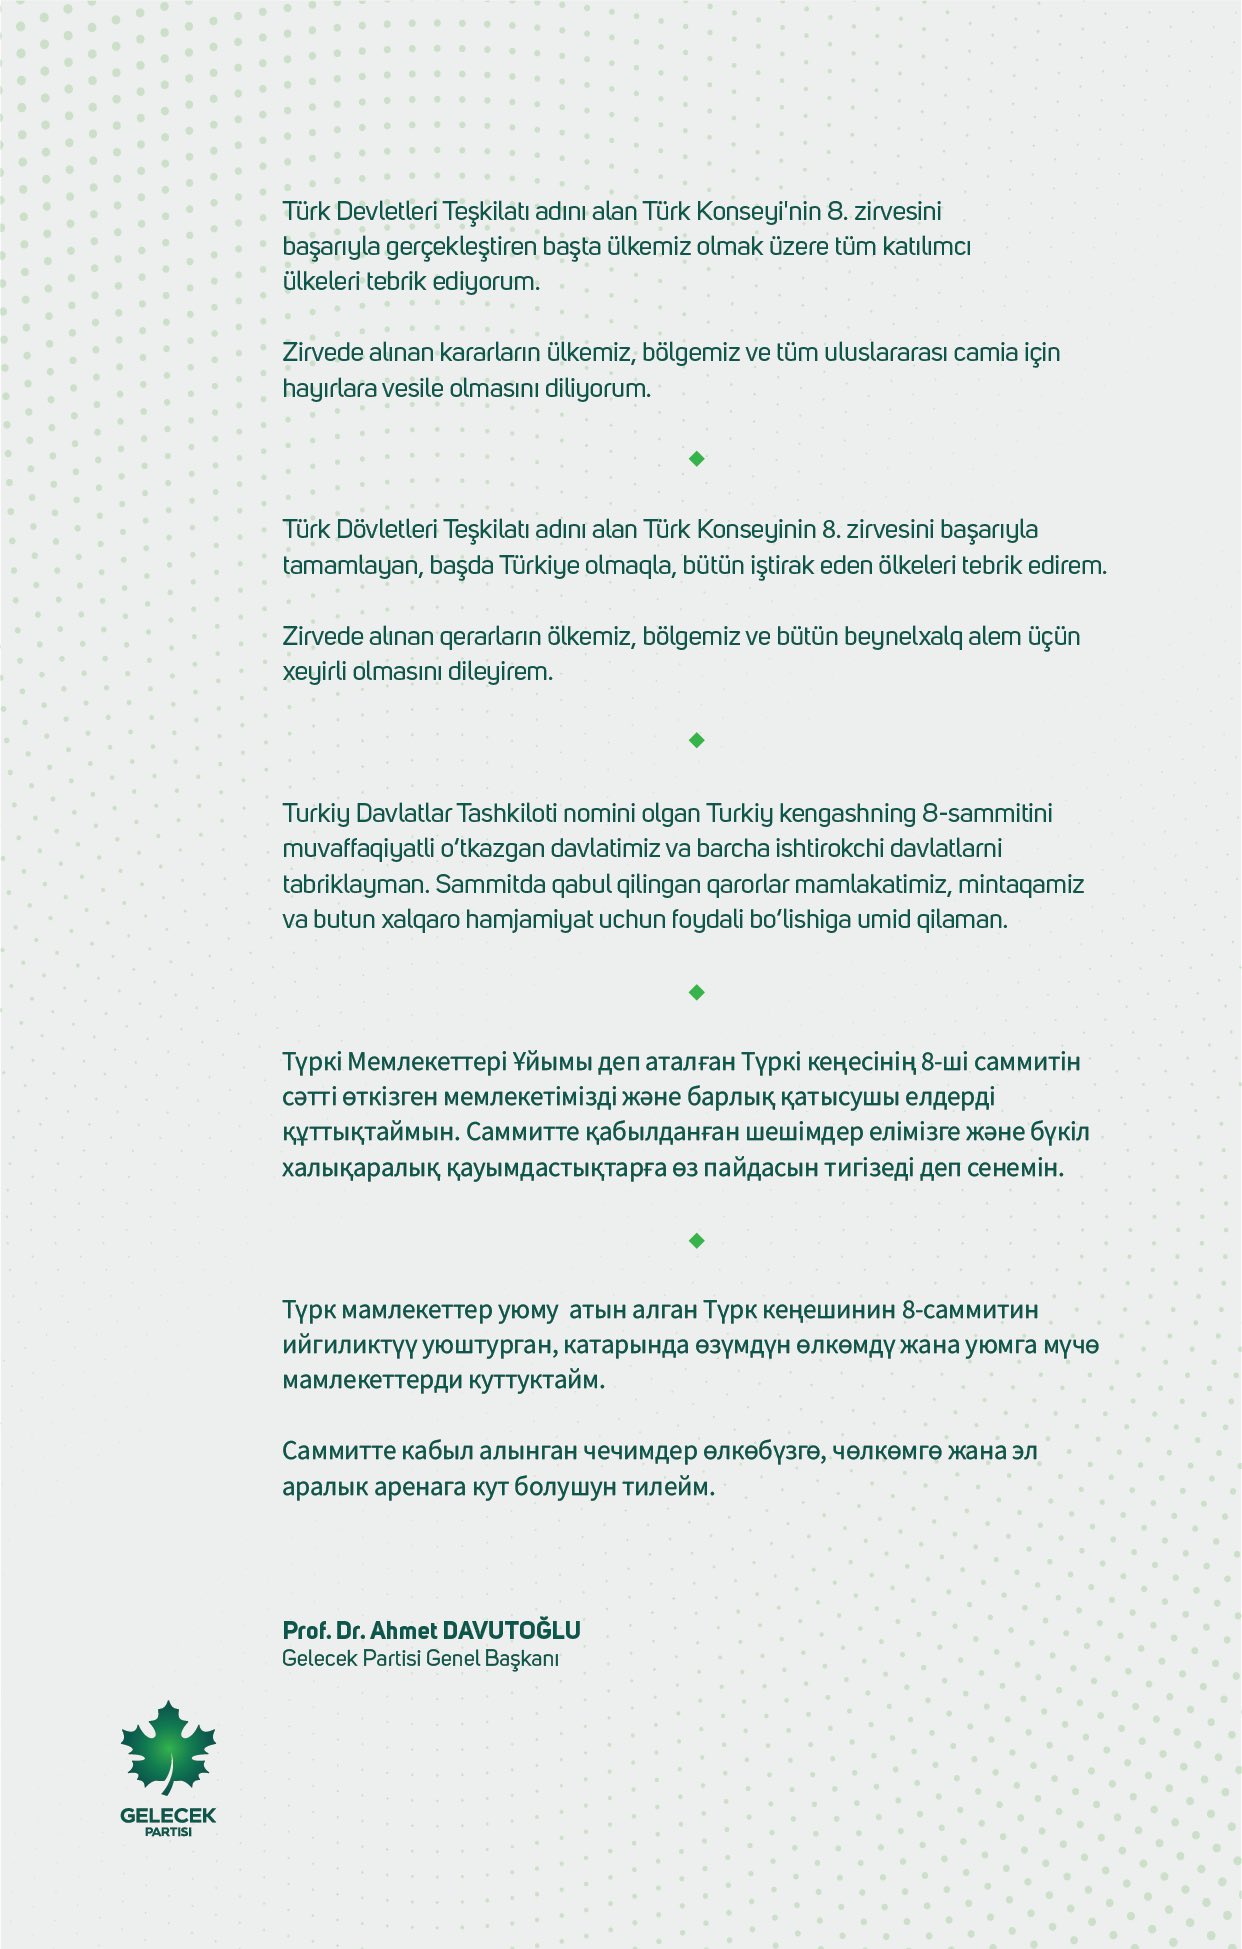  Genel Başkanımız Ahmet Davutoğlu'ndan Türk Konseyi'nin 8. zirvesine Tebrik